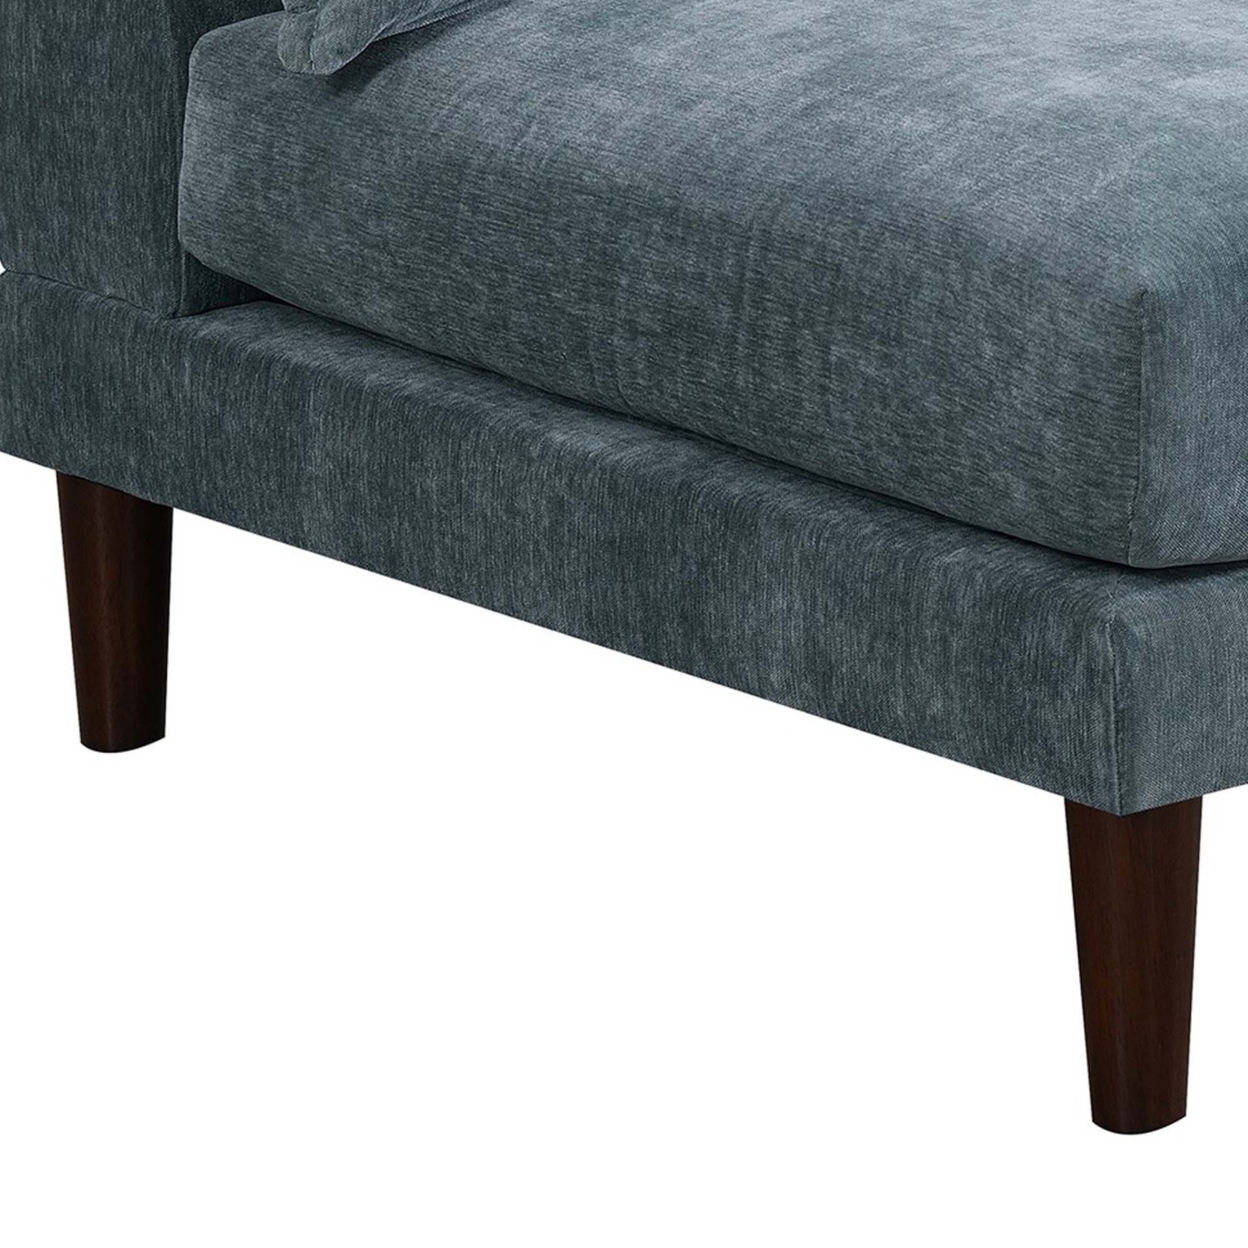 Rio 33 Inch Modular Armless Sofa Chair, Lumbar Cushion, Slate Blue Fabric- Saltoro Sherpi